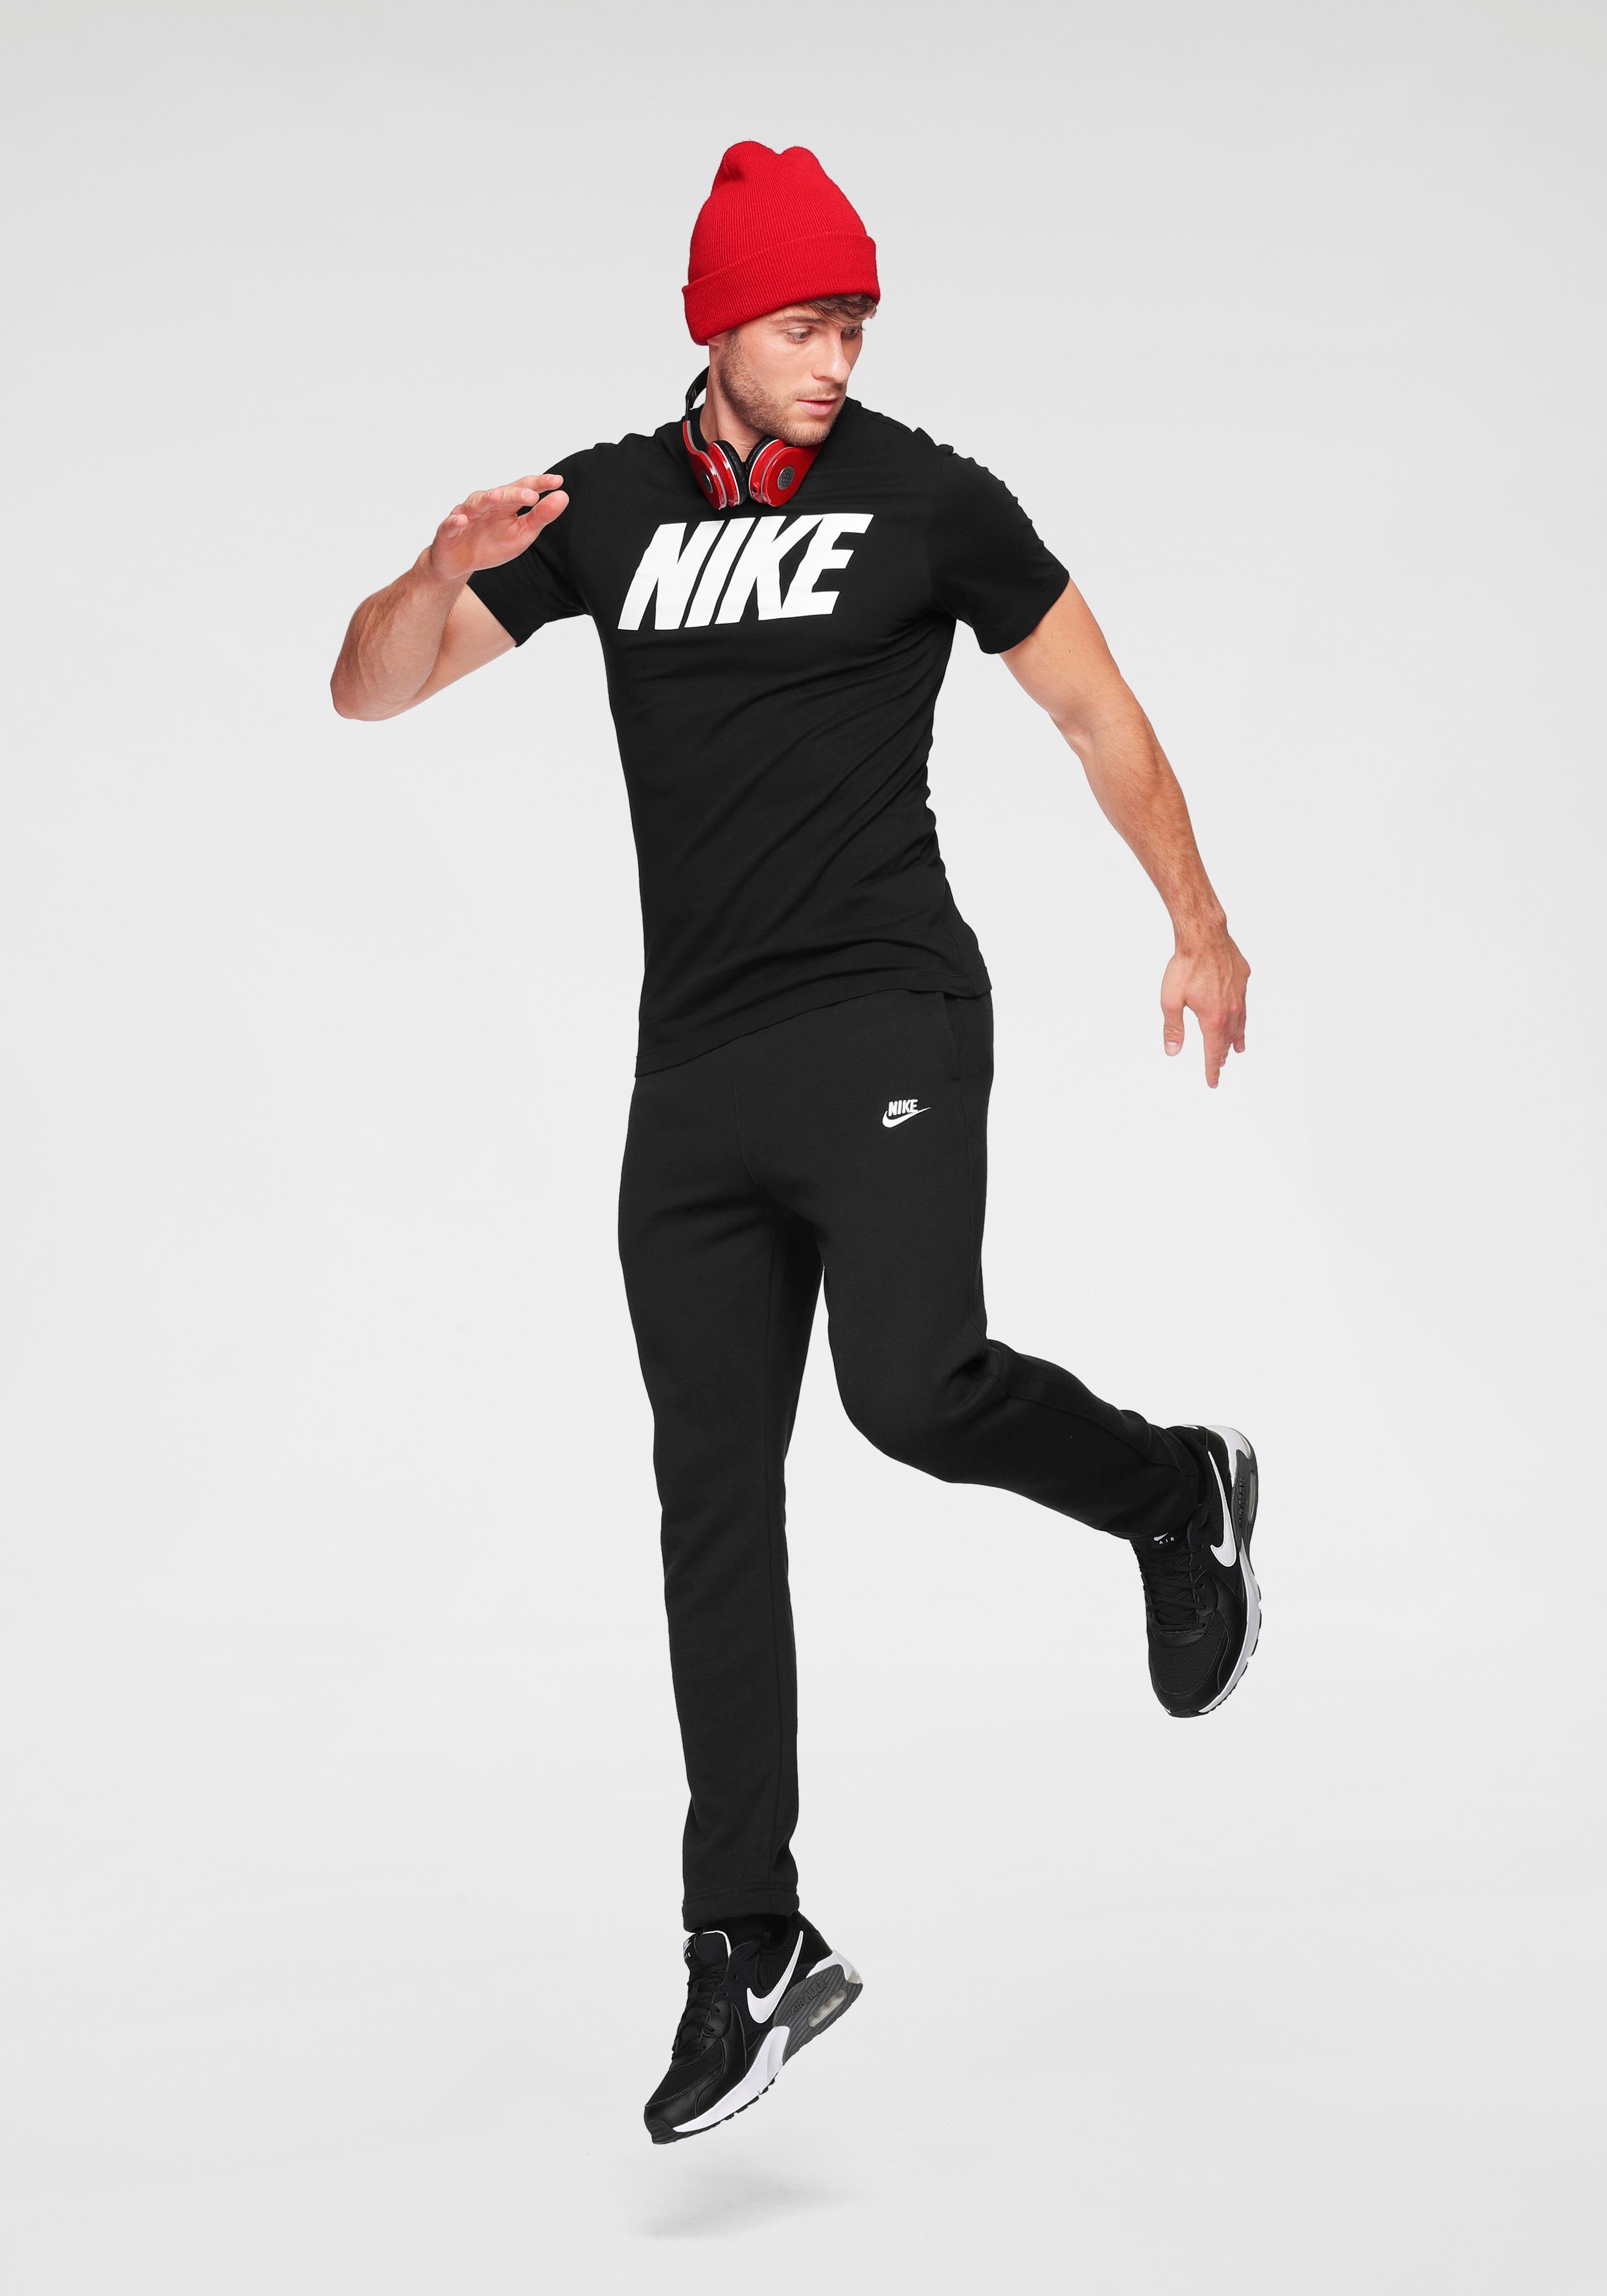 Nike Sportswear Jogginghose Club Fleece Pants schwarz Men's